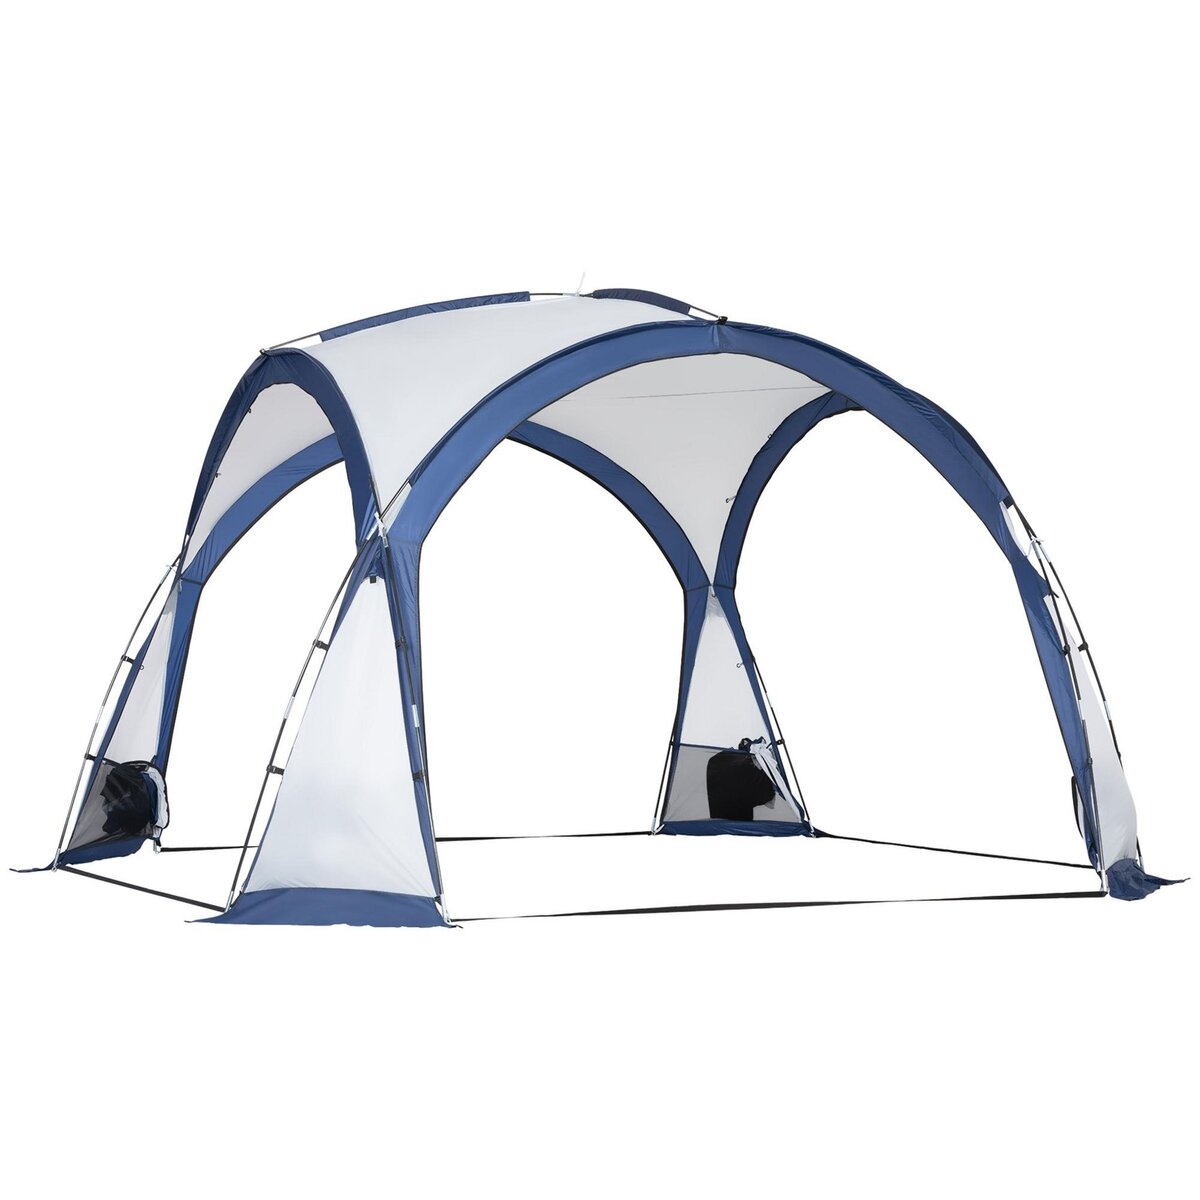 OUTSUNNY Tente de camping dôme familiale 6-8 personnes - 4 portes en filet zippées, tissu Oxford amovible, crochet lampe, sac de transport - dim. 350L x 350l x 230H cm - blanc bleu